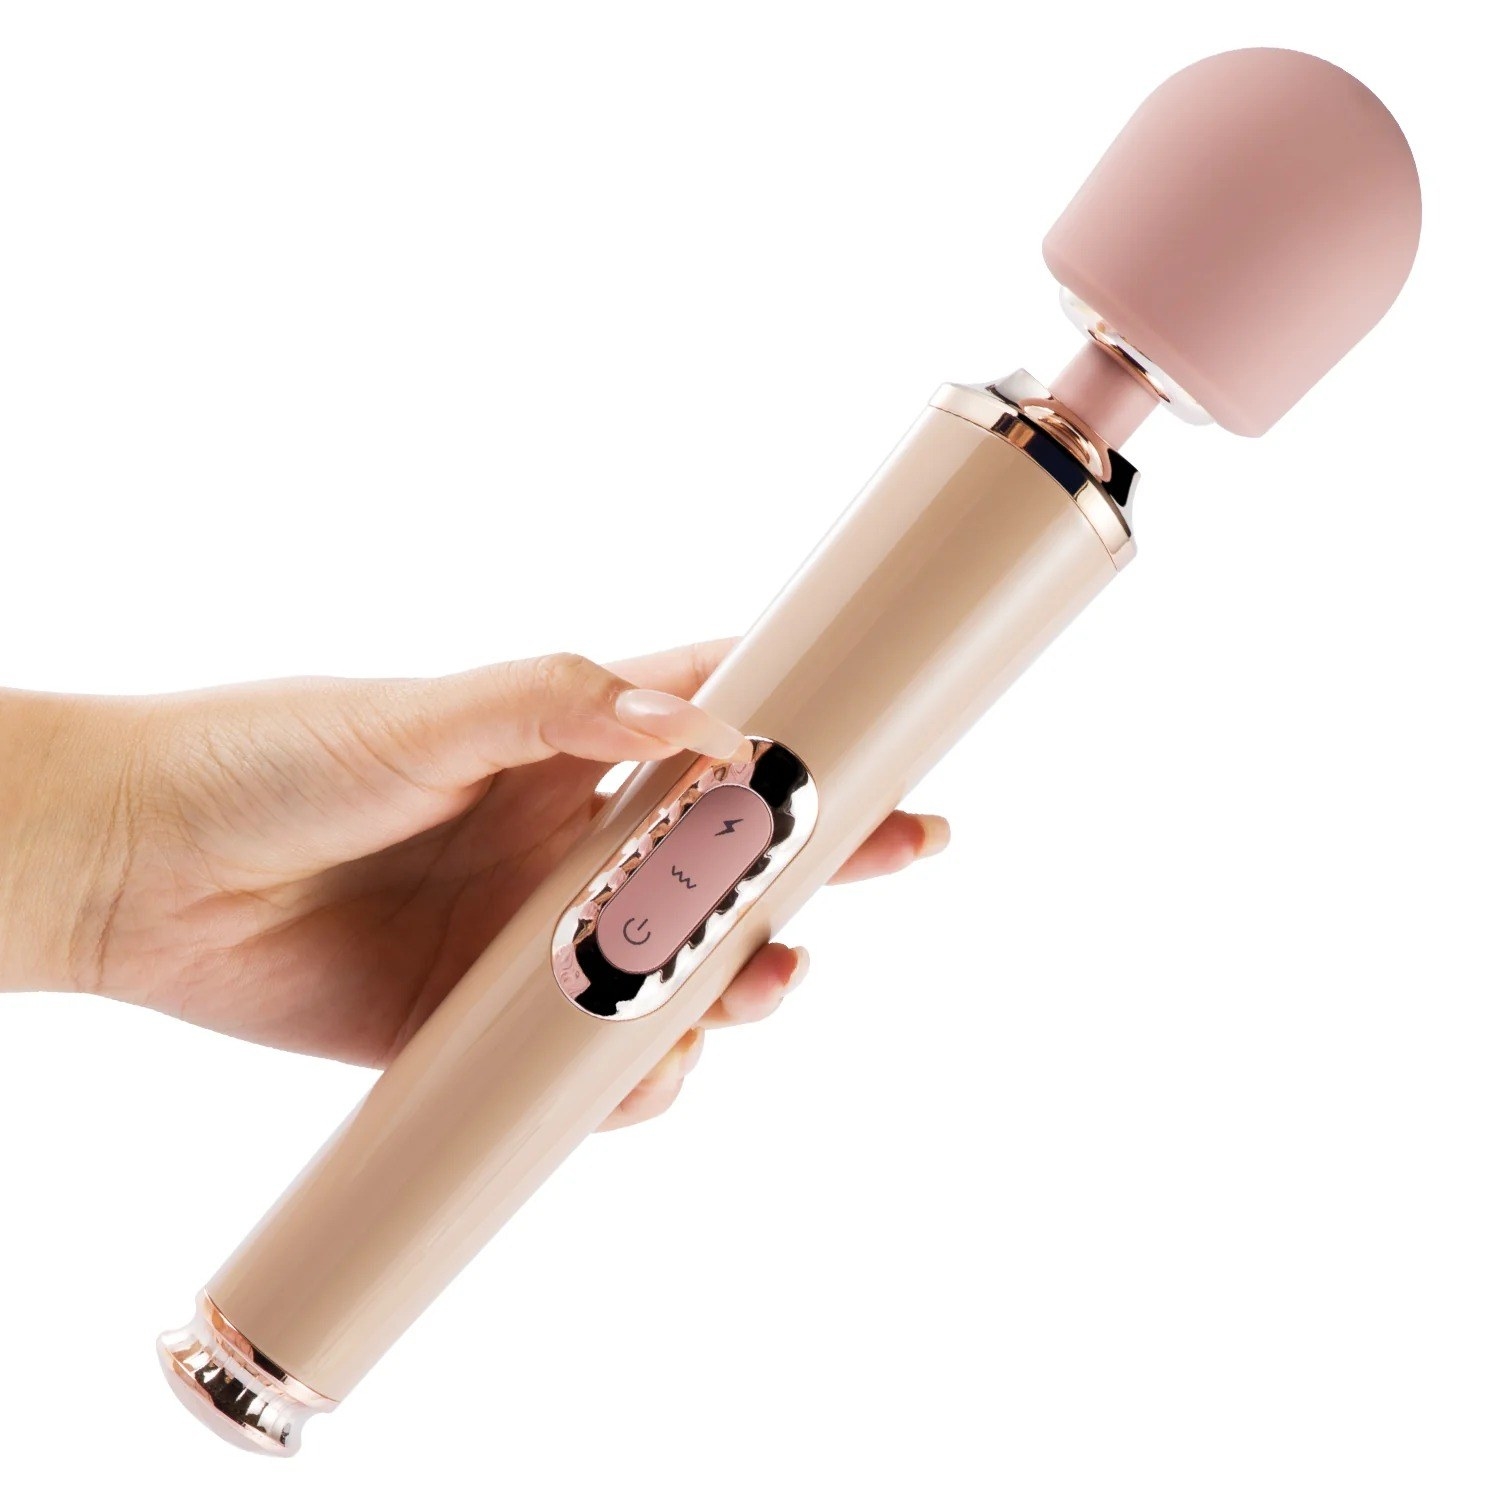 Pastel pink wand vibrator